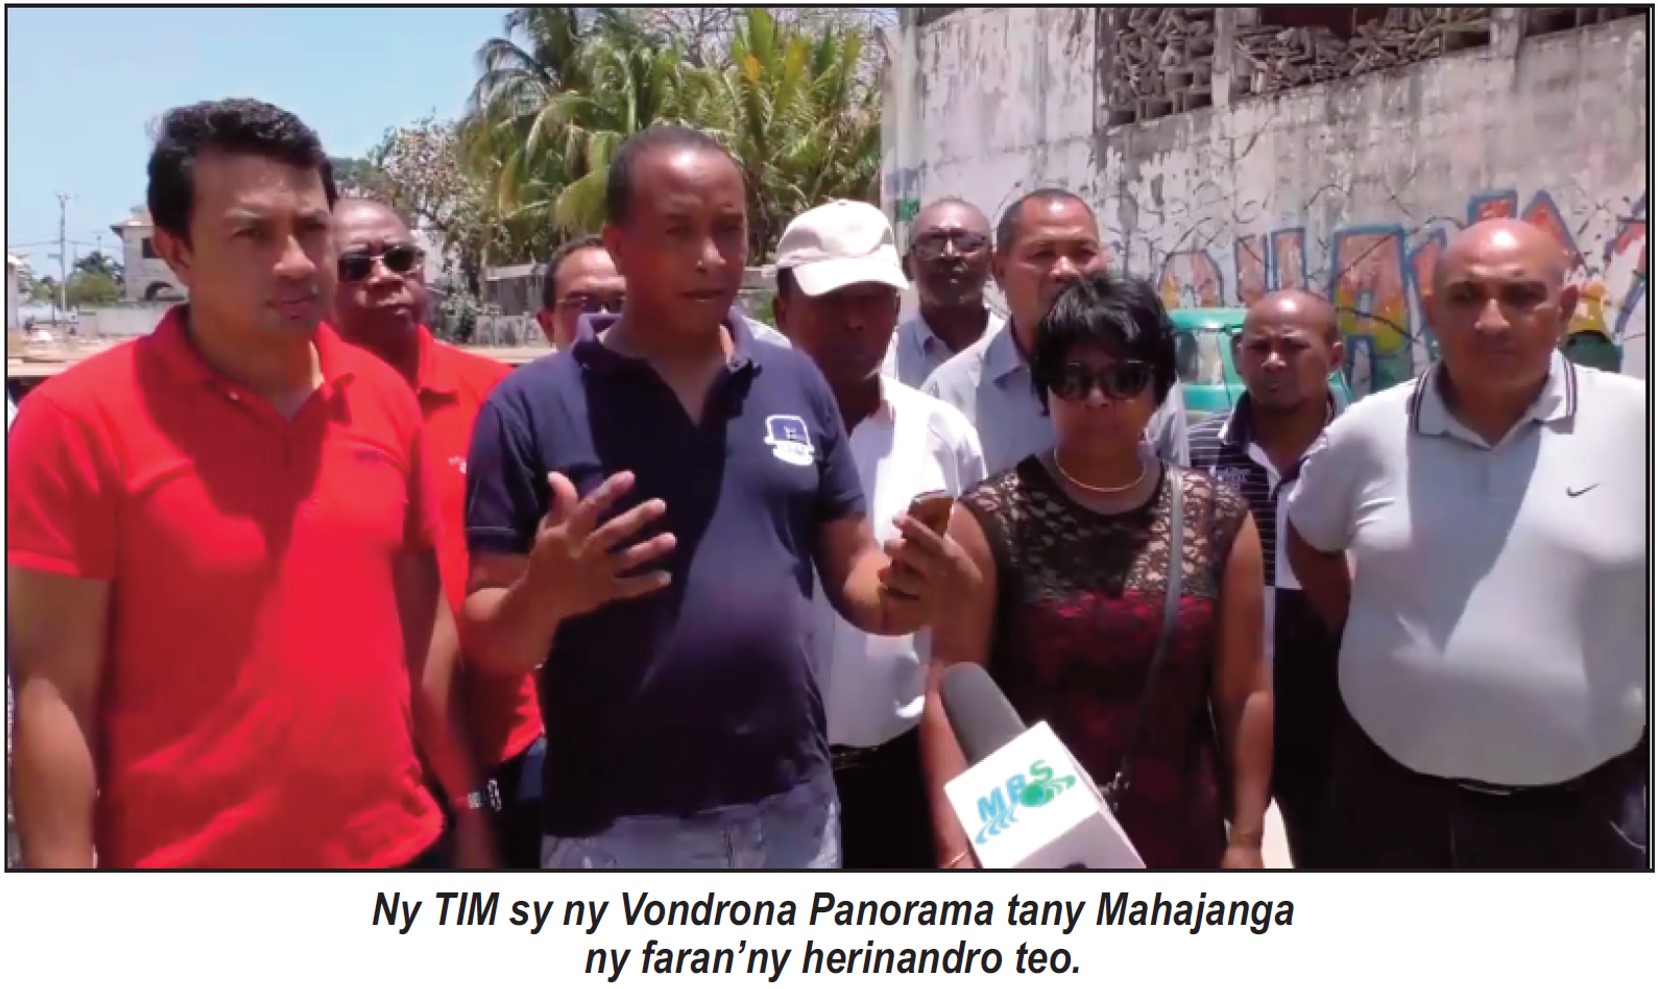 hevitra momba ny fampiarahana Mahajanga Madagaskar